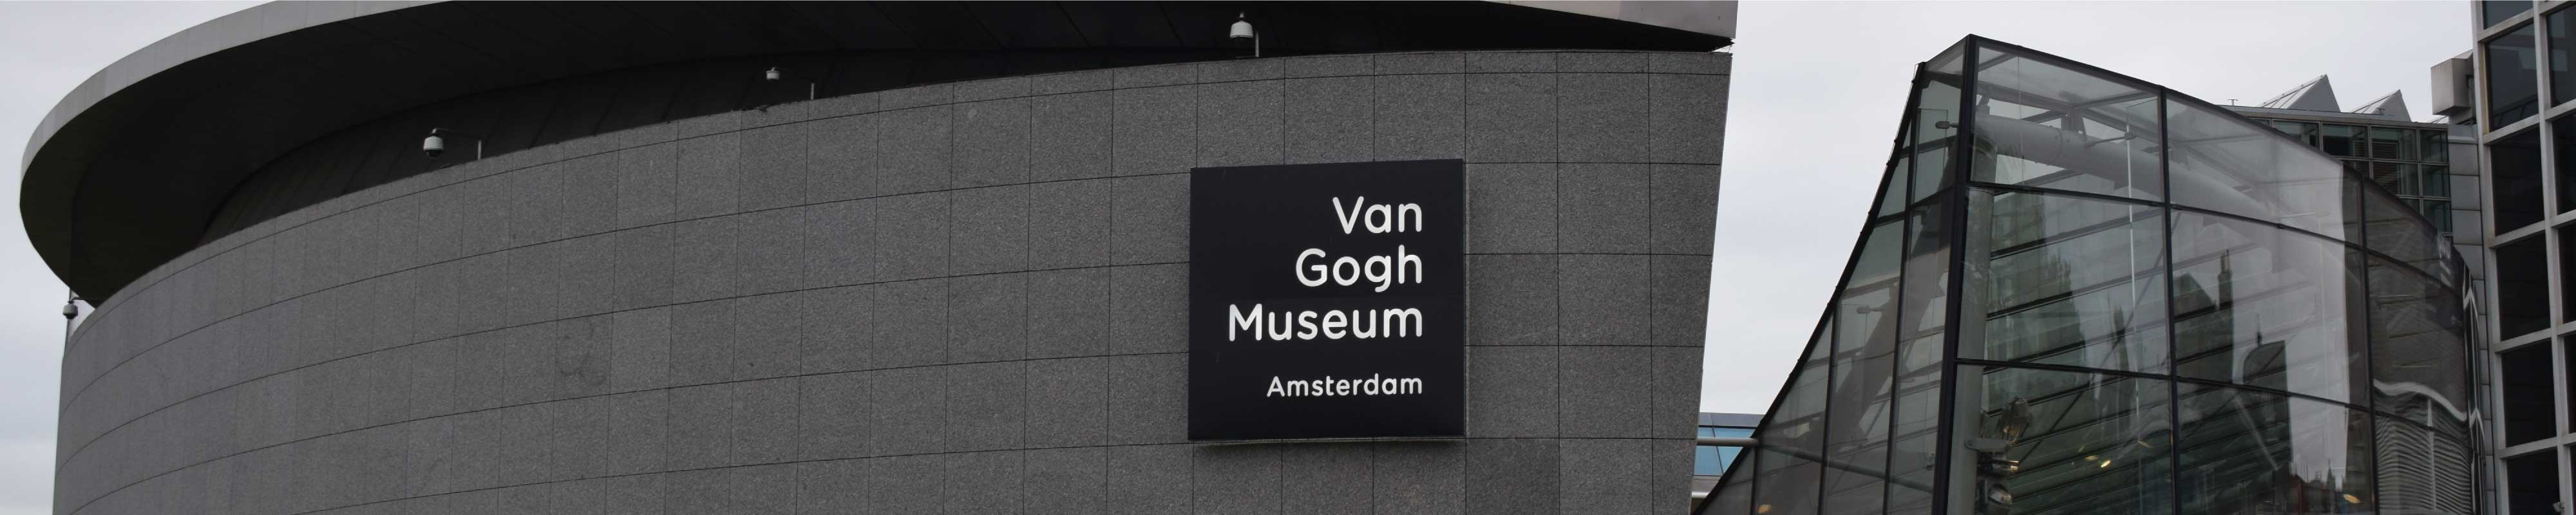 Depósito de Bagagem | Museu Van Gogh em Amesterdão - Nannybag